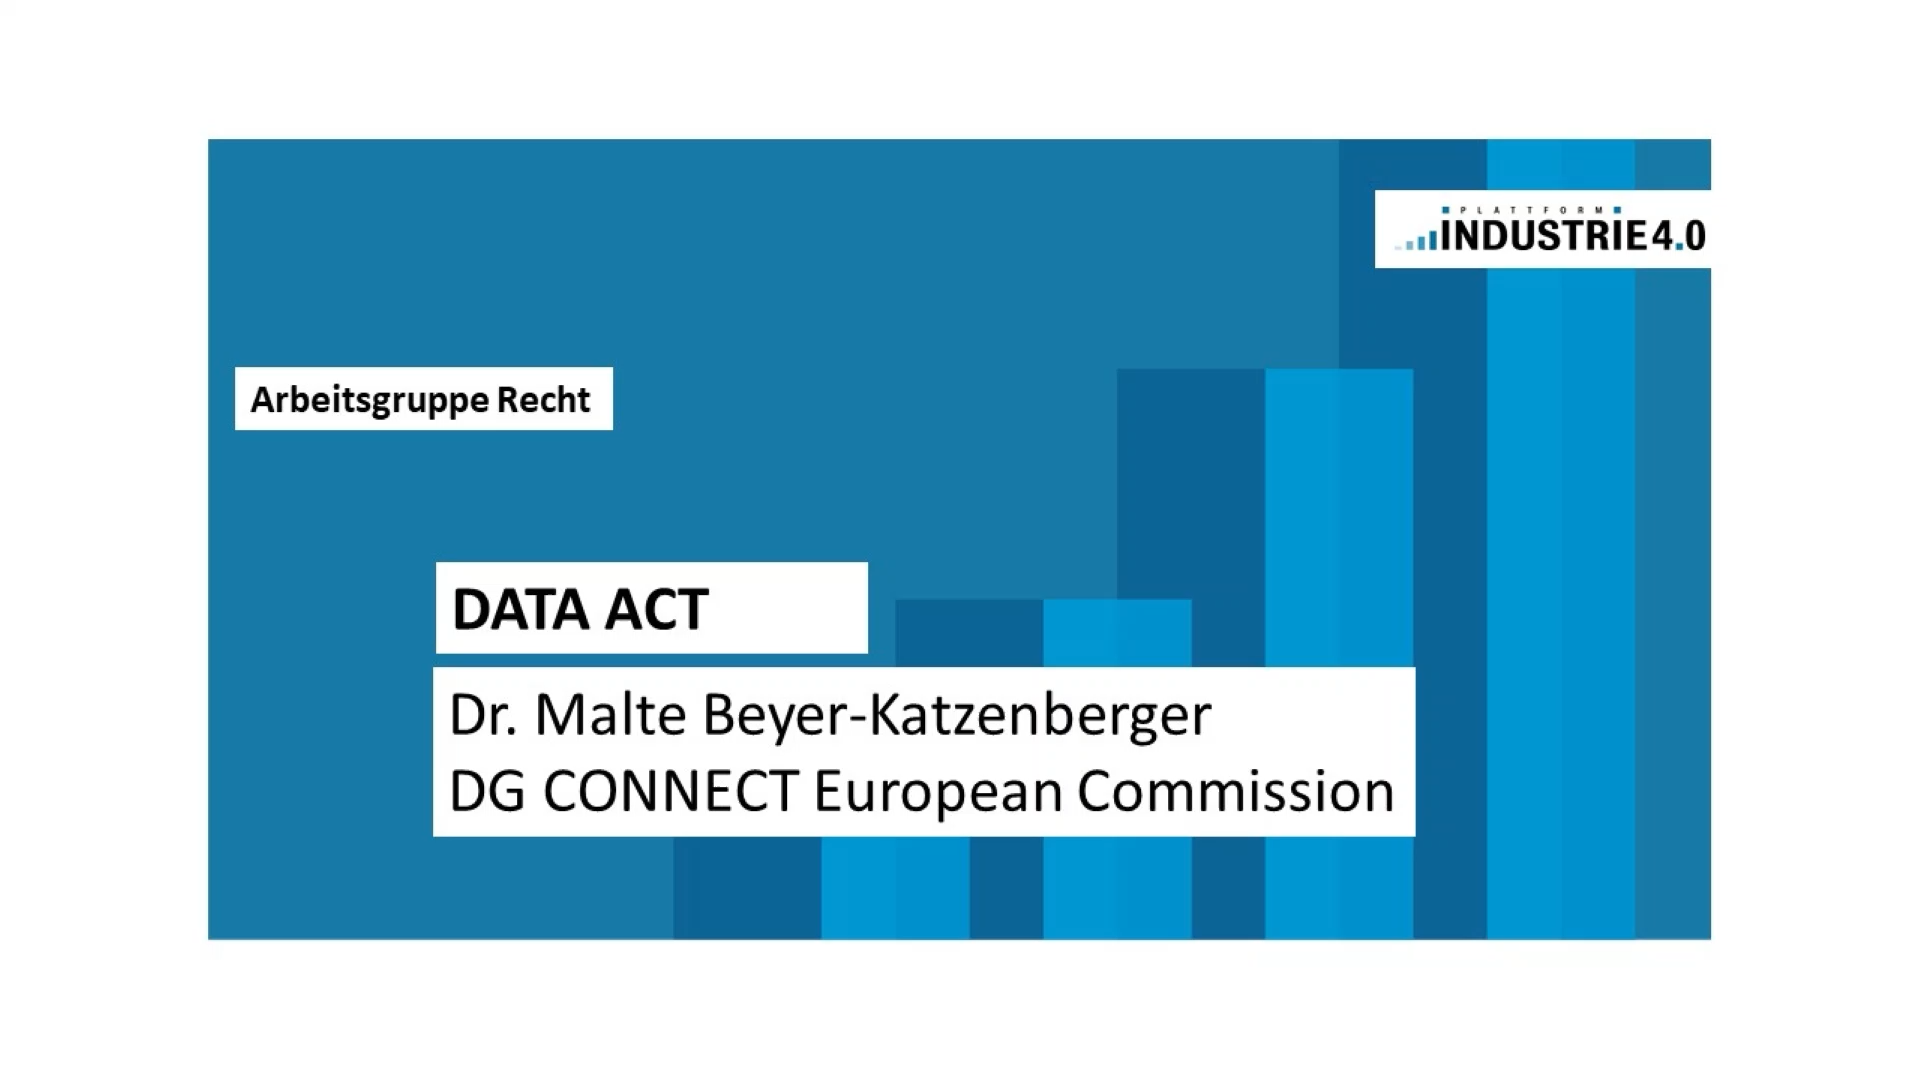 Data Act: Dr. Malte Beyer-Katzenberger, DG CONNECT European Commission